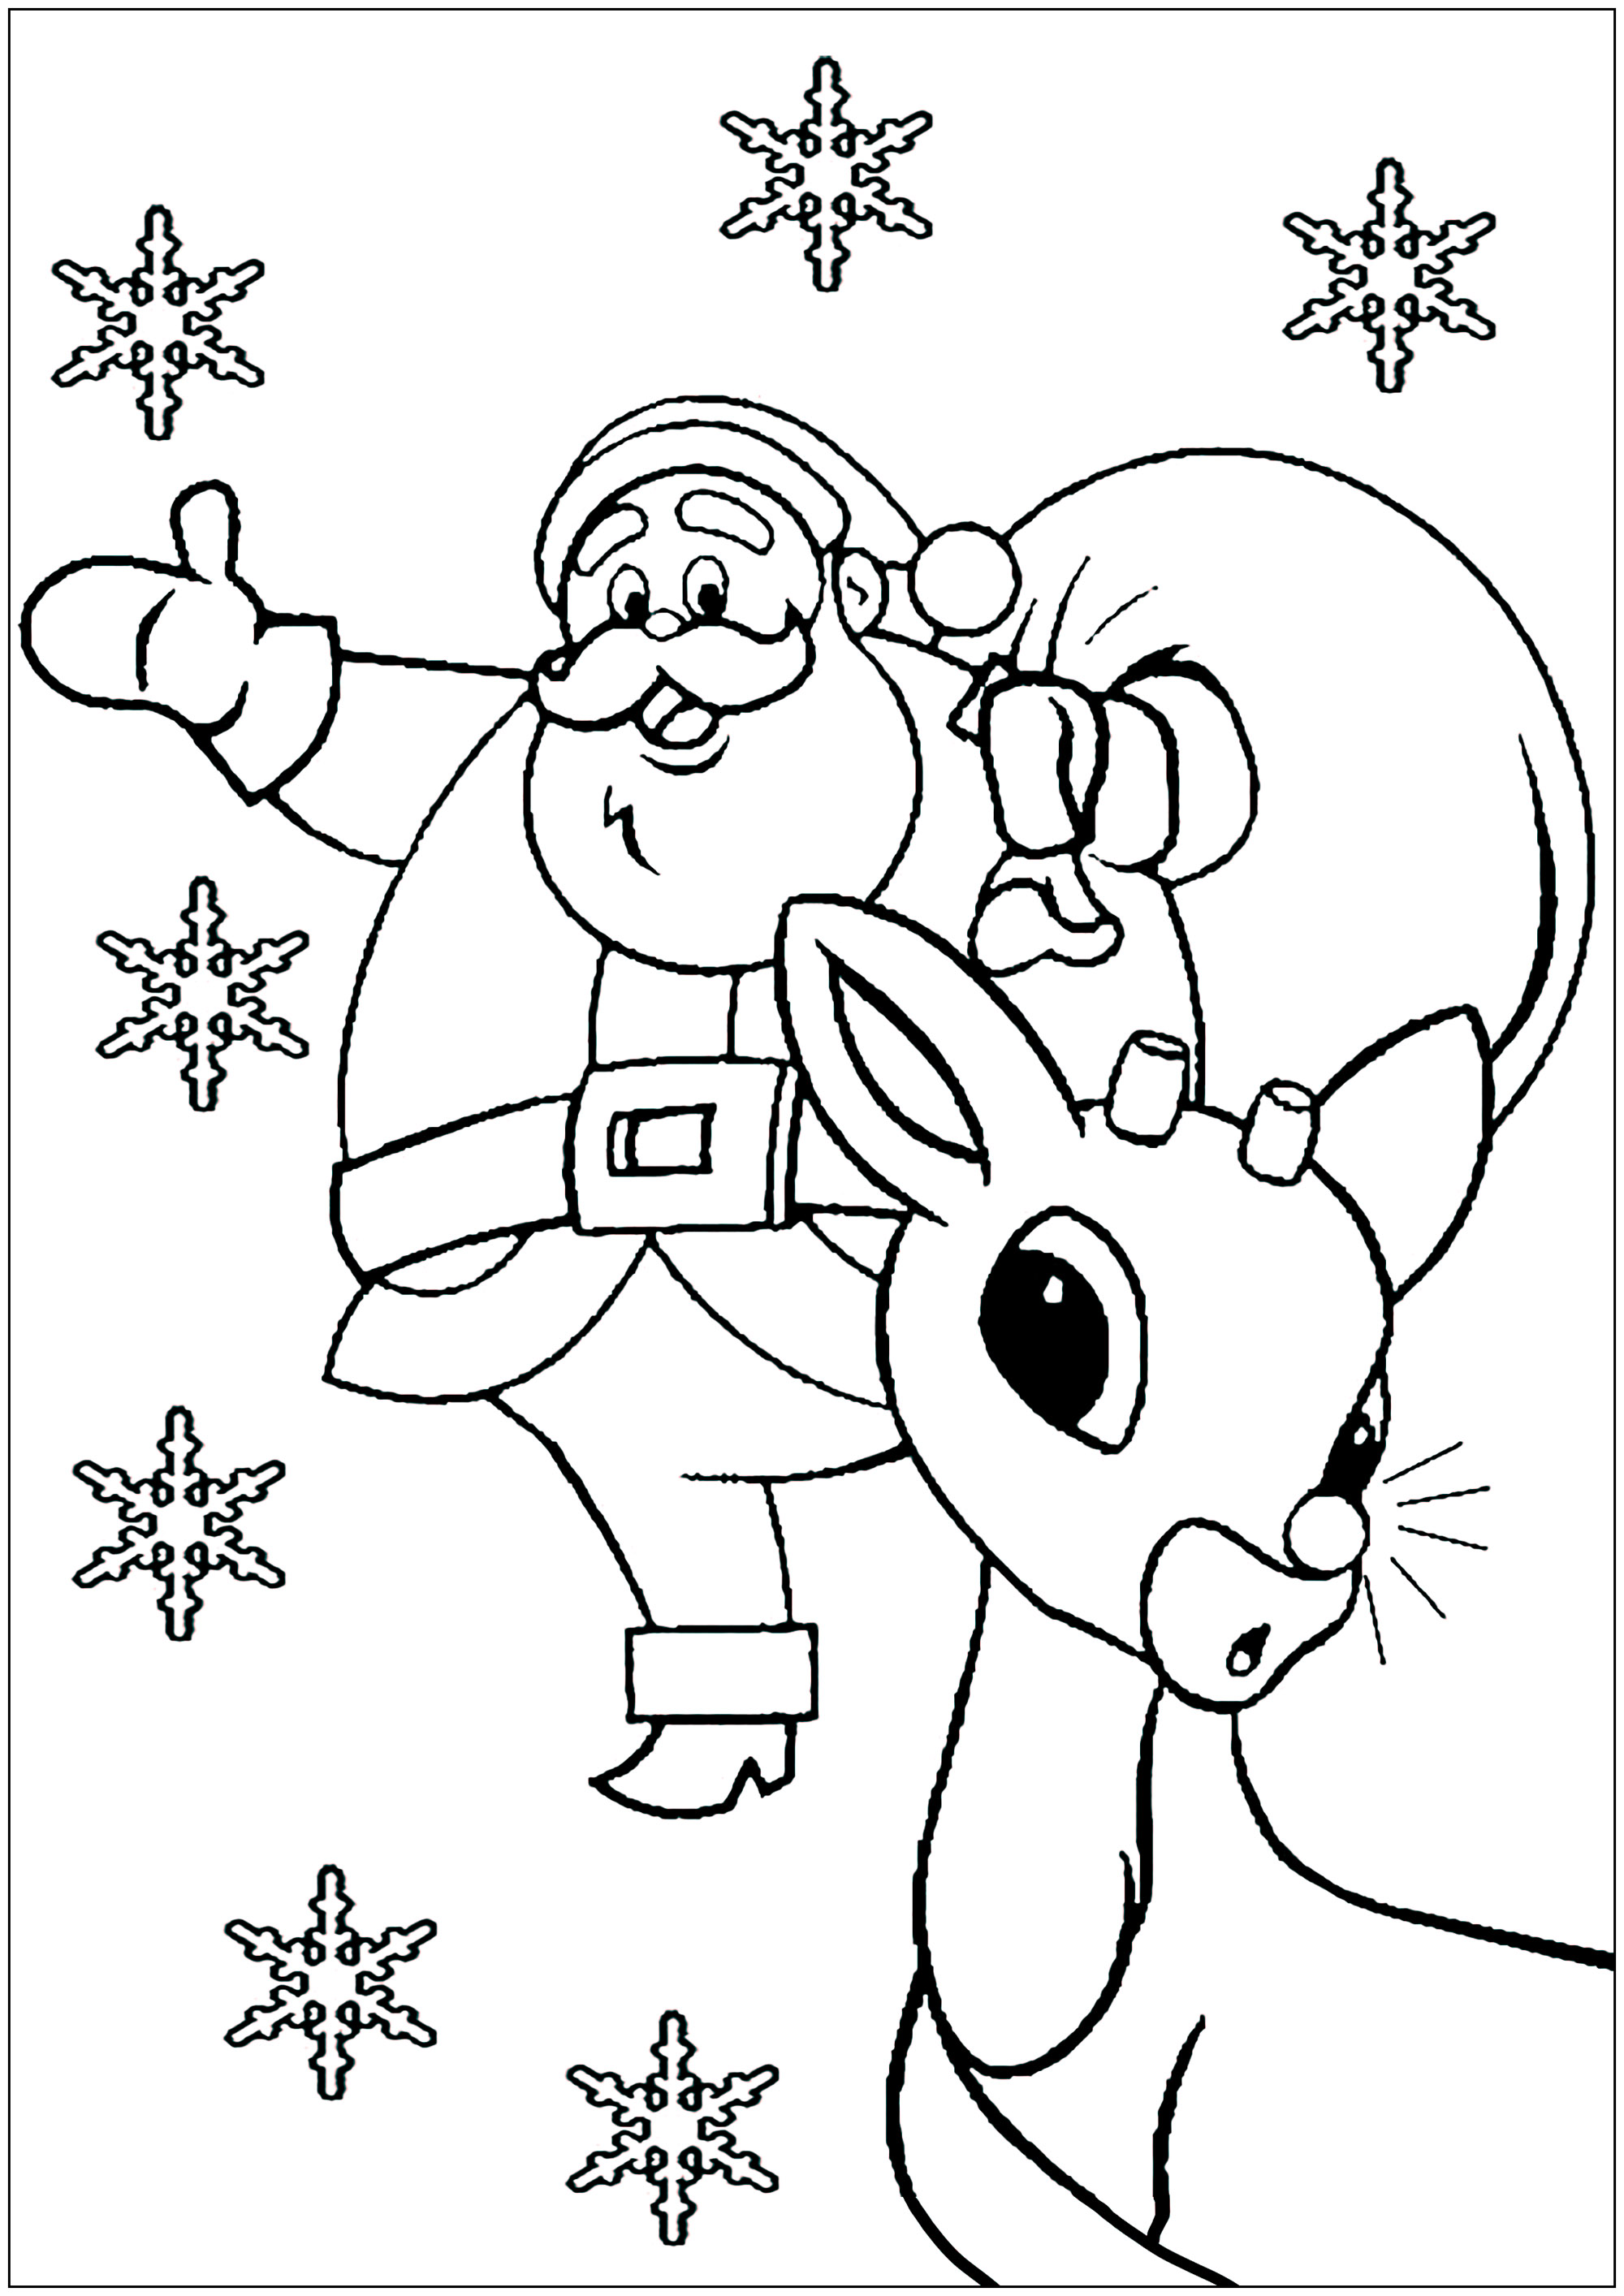 Rodolphe / Rudolphe, a rena do nariz vermelho e o Pai Natal